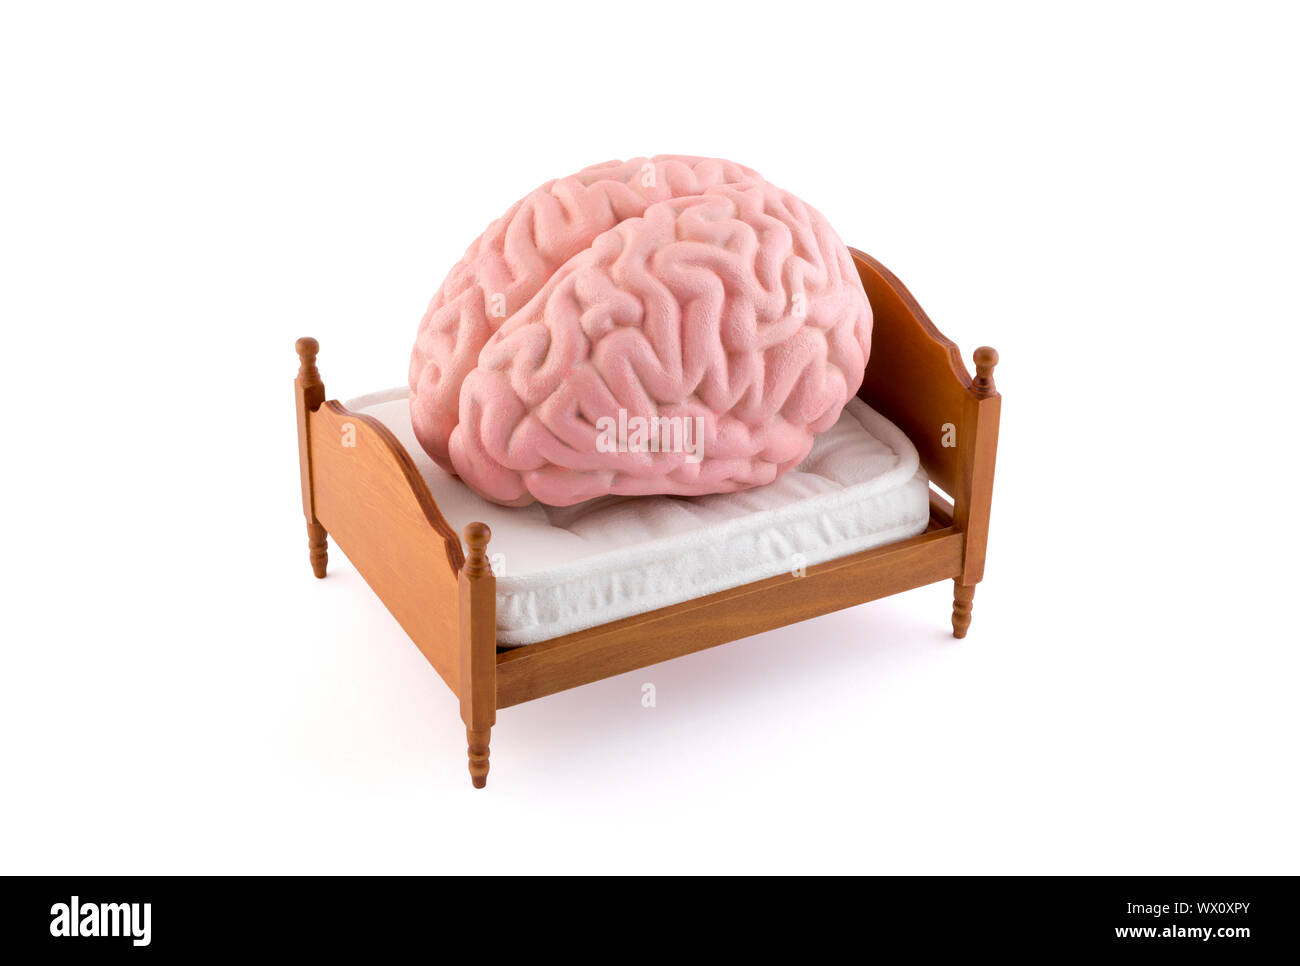 Menschliche Gehirn ruht auf dem Bett auf weißem Hintergrund Stockfoto